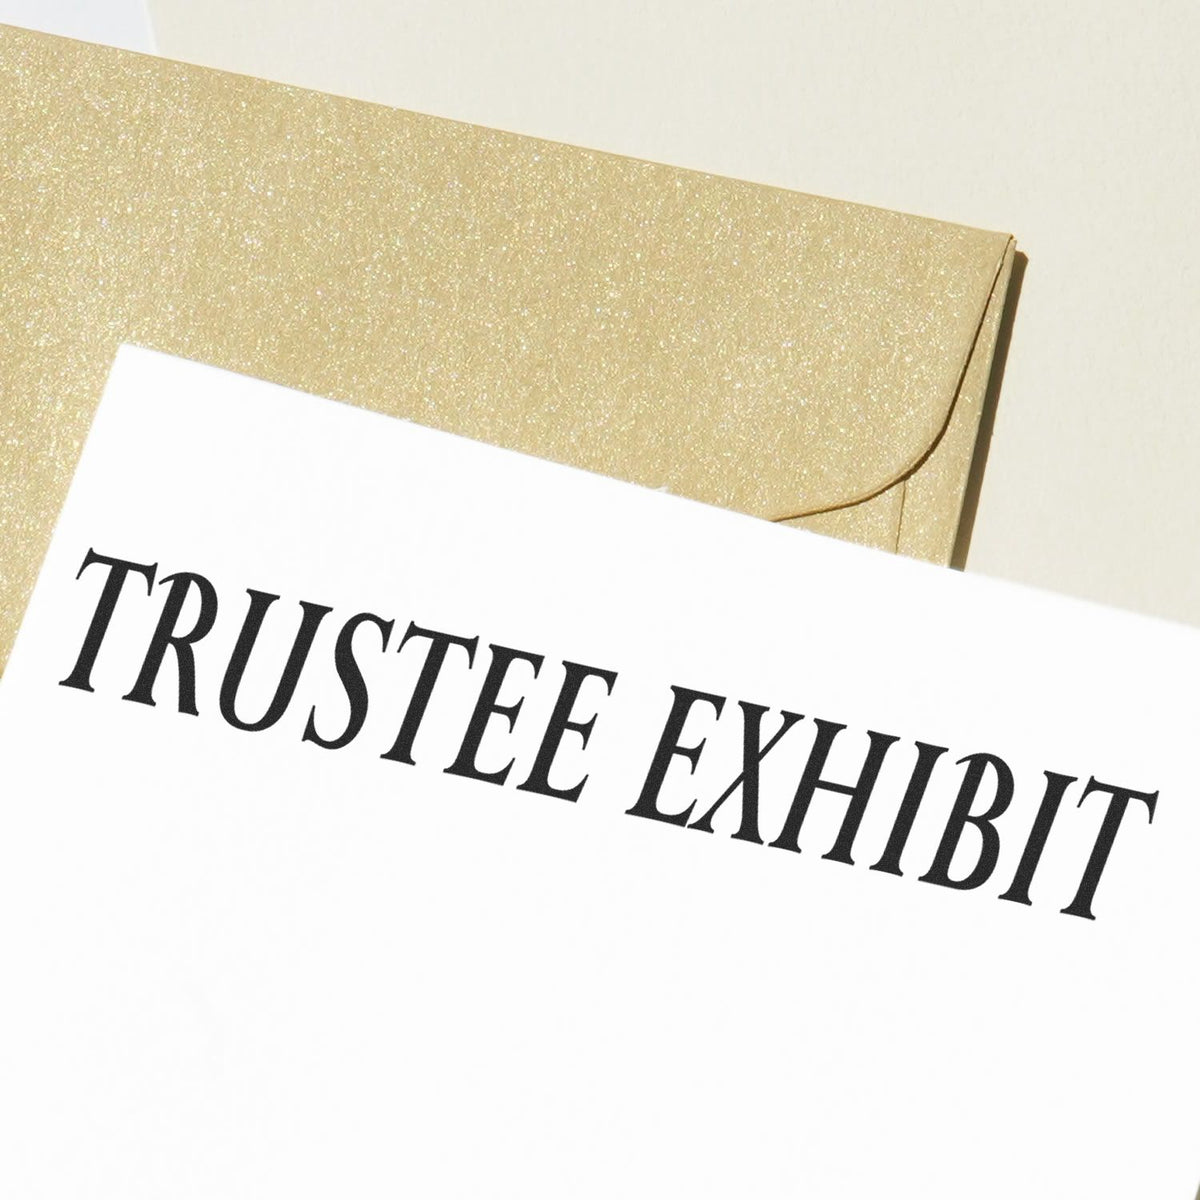 Trustee Exhibit Rubber Stamp Lifestyle Photo